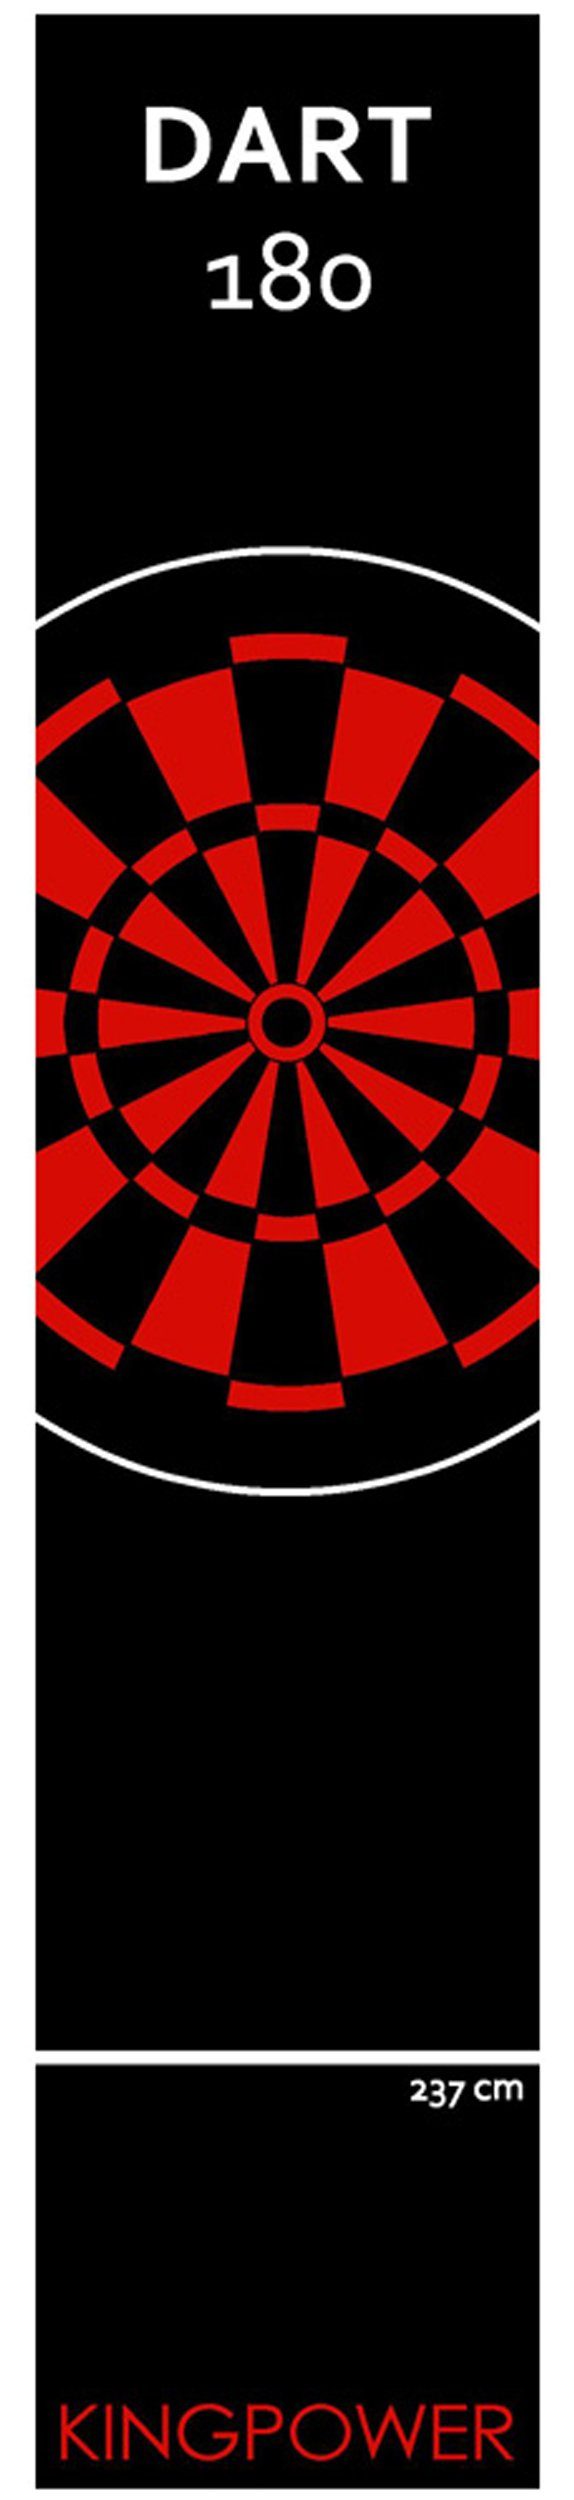 Kingpower Dartmatte Dart Größen Rot Matte Design Darts Dartmatte 22 Turnier 2 Kingpower Dartteppich Matte